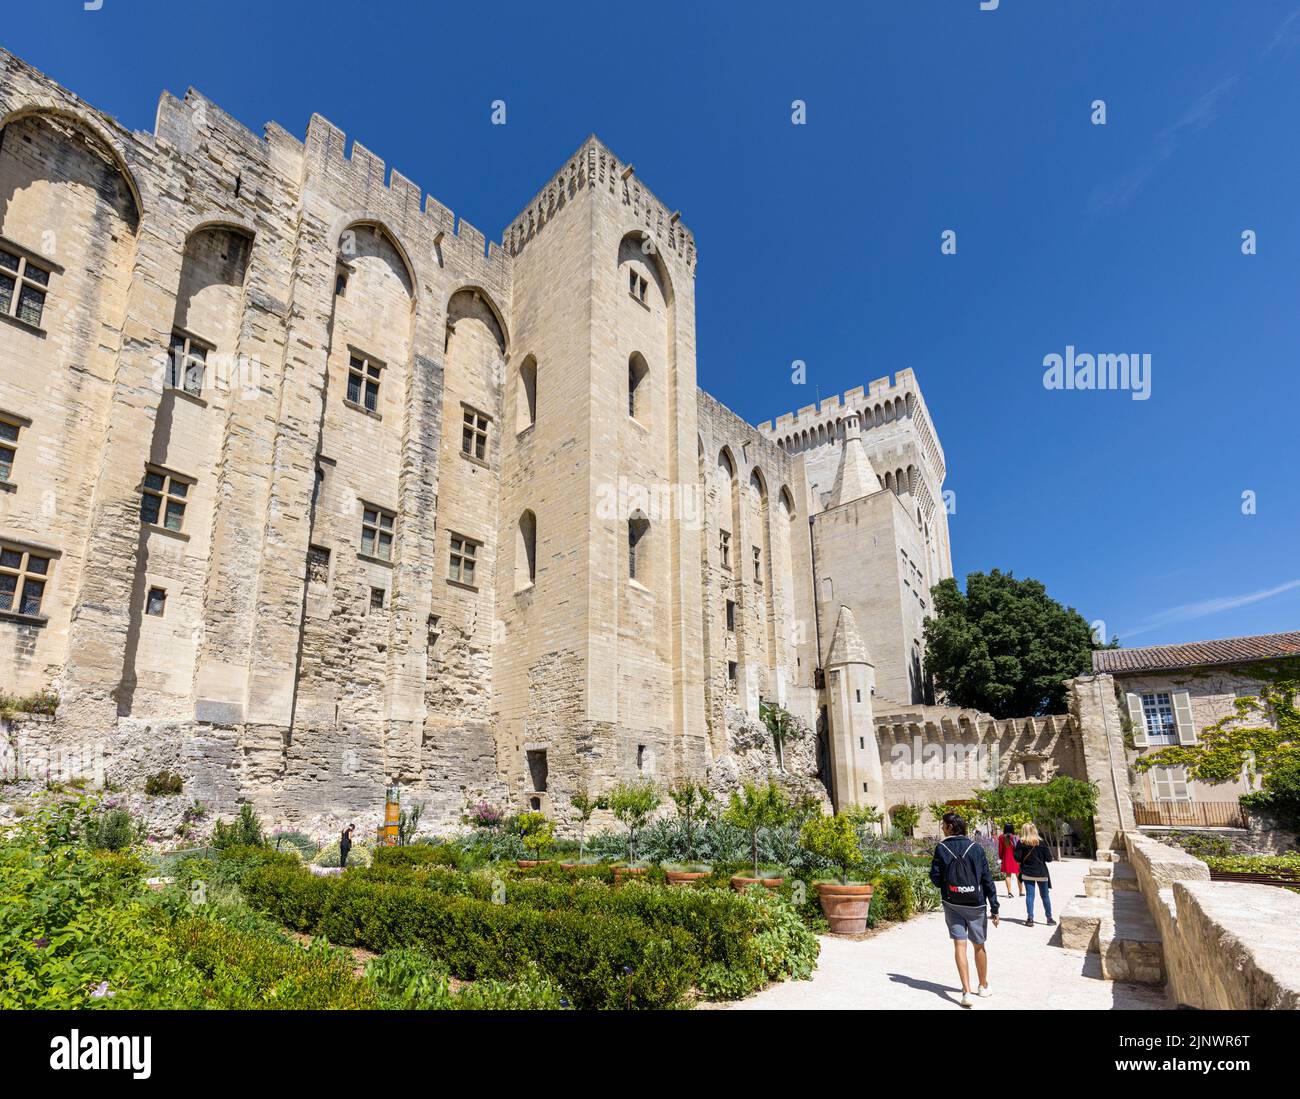 Les jardins du Palais des Papes - Palais des Papes, Avignon, Vaucluse, France. Le Centre historique d'Avignon est un site classé au patrimoine mondial de l'UNESCO. Banque D'Images